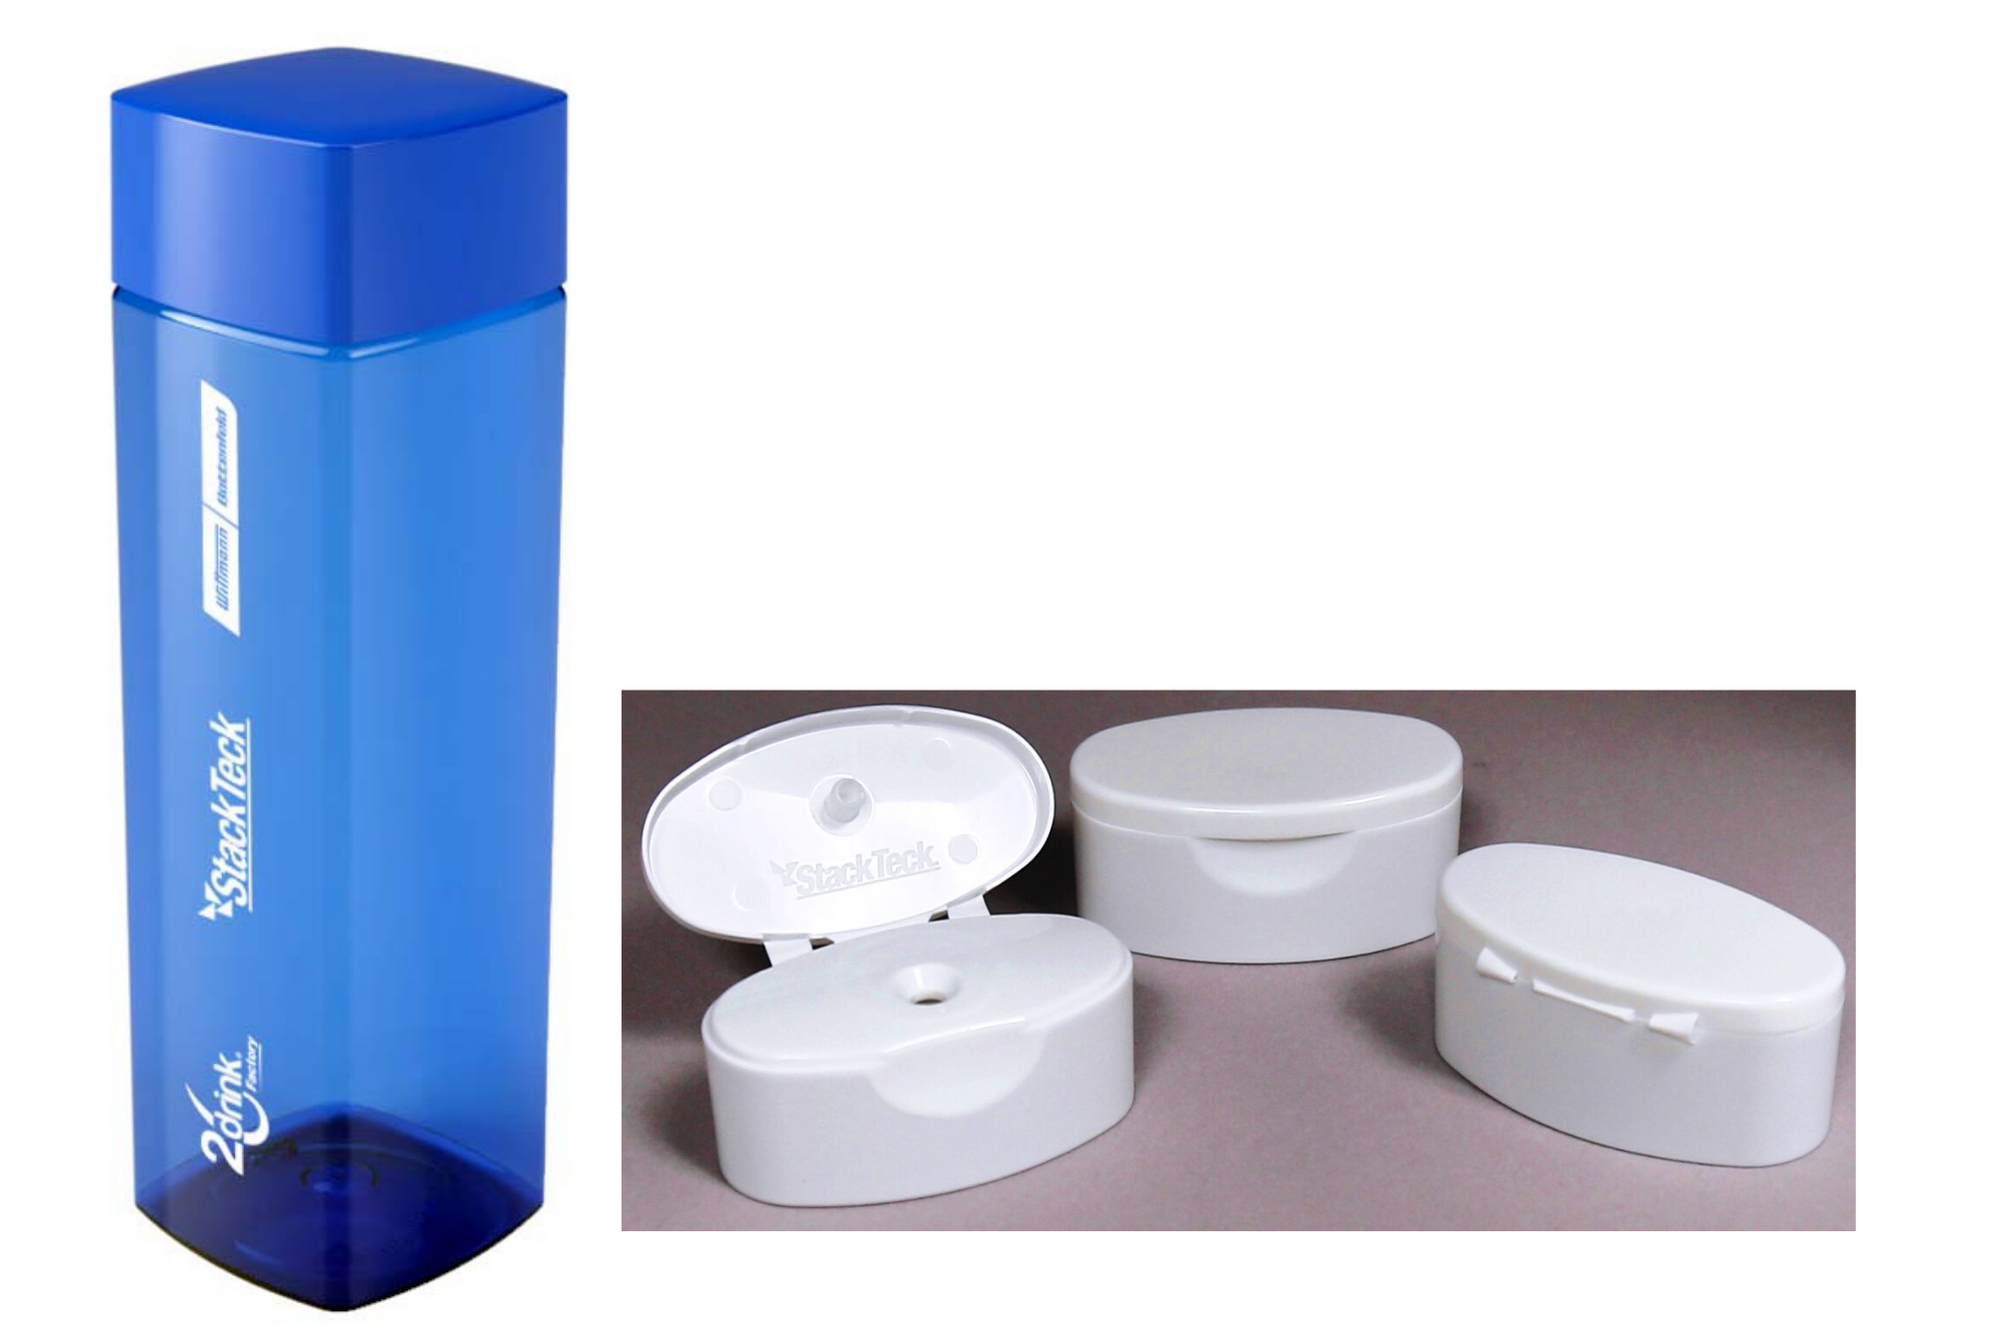 Tapa cuadrada con botella de muestra y muestras de tapa Flip-Top que se fabricaron con moldes StackTeck en Expo Plásticos 2021.